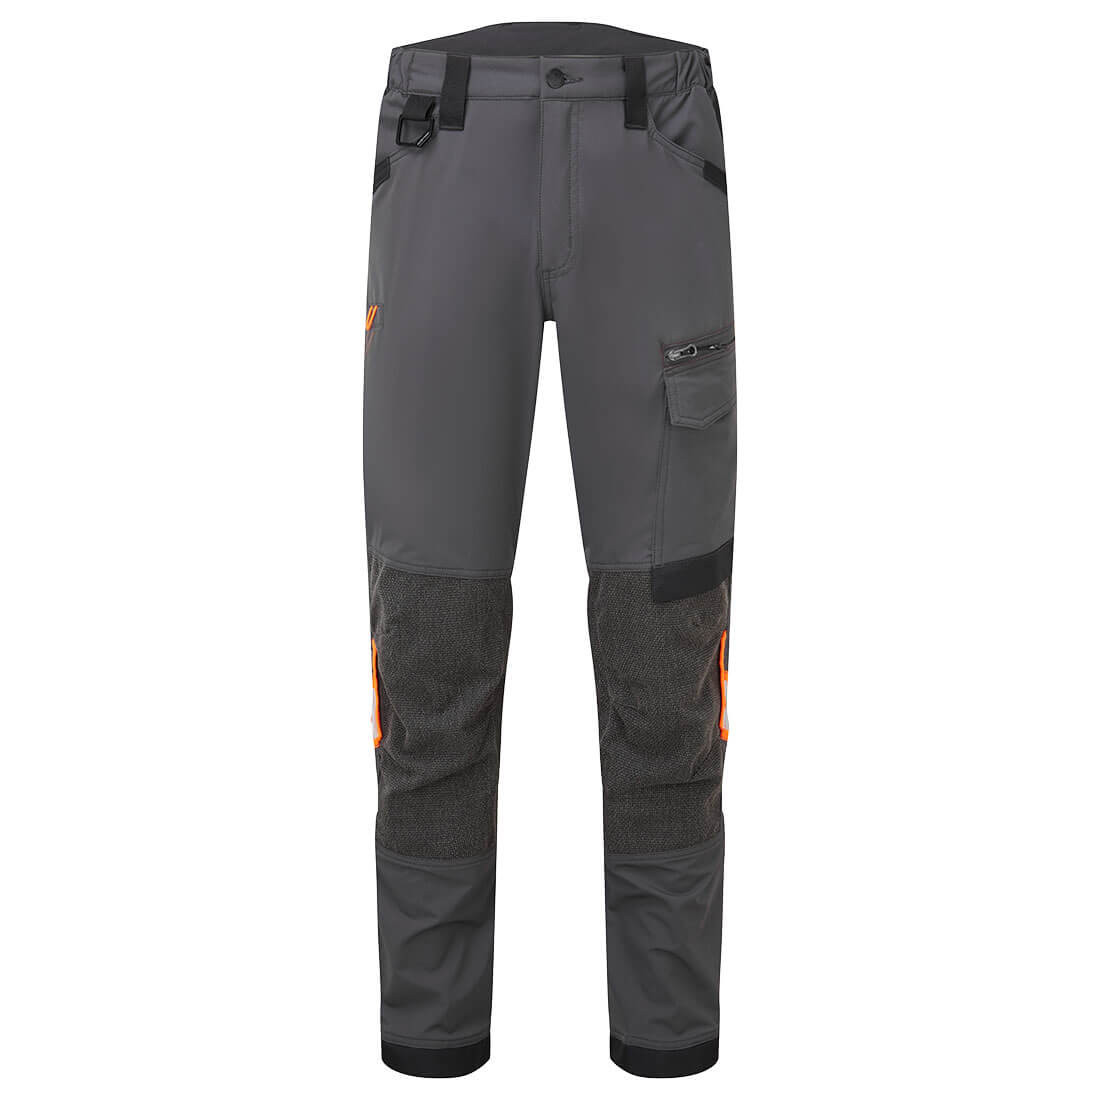 Pantalon de travail élastique EV4 - Les vêtements de protection